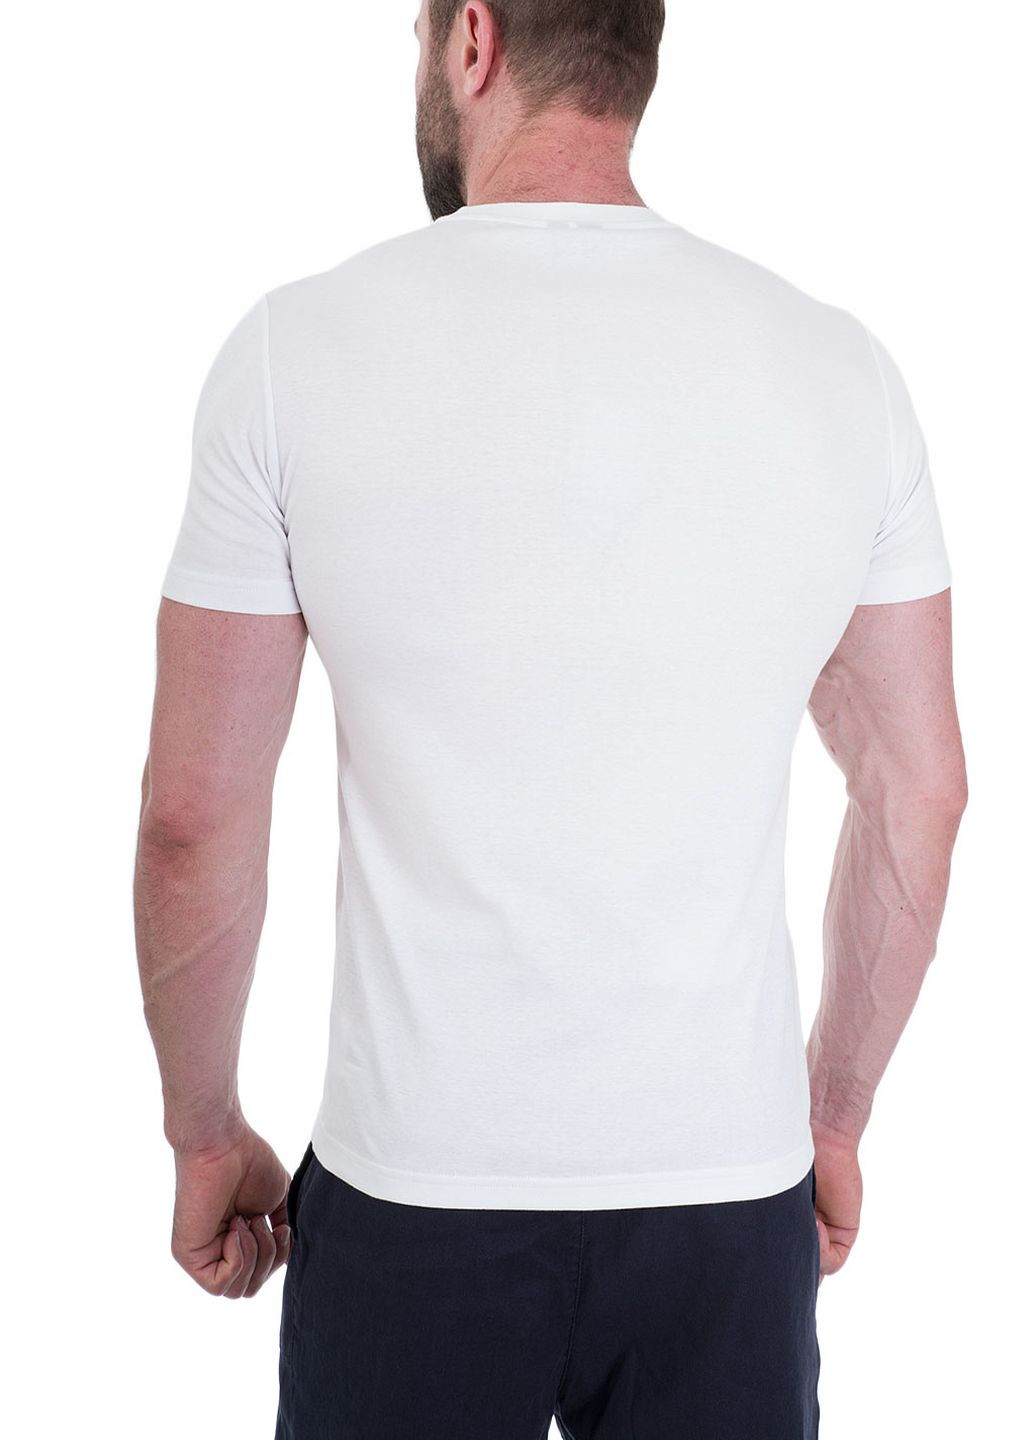 Біла футболка Bogner